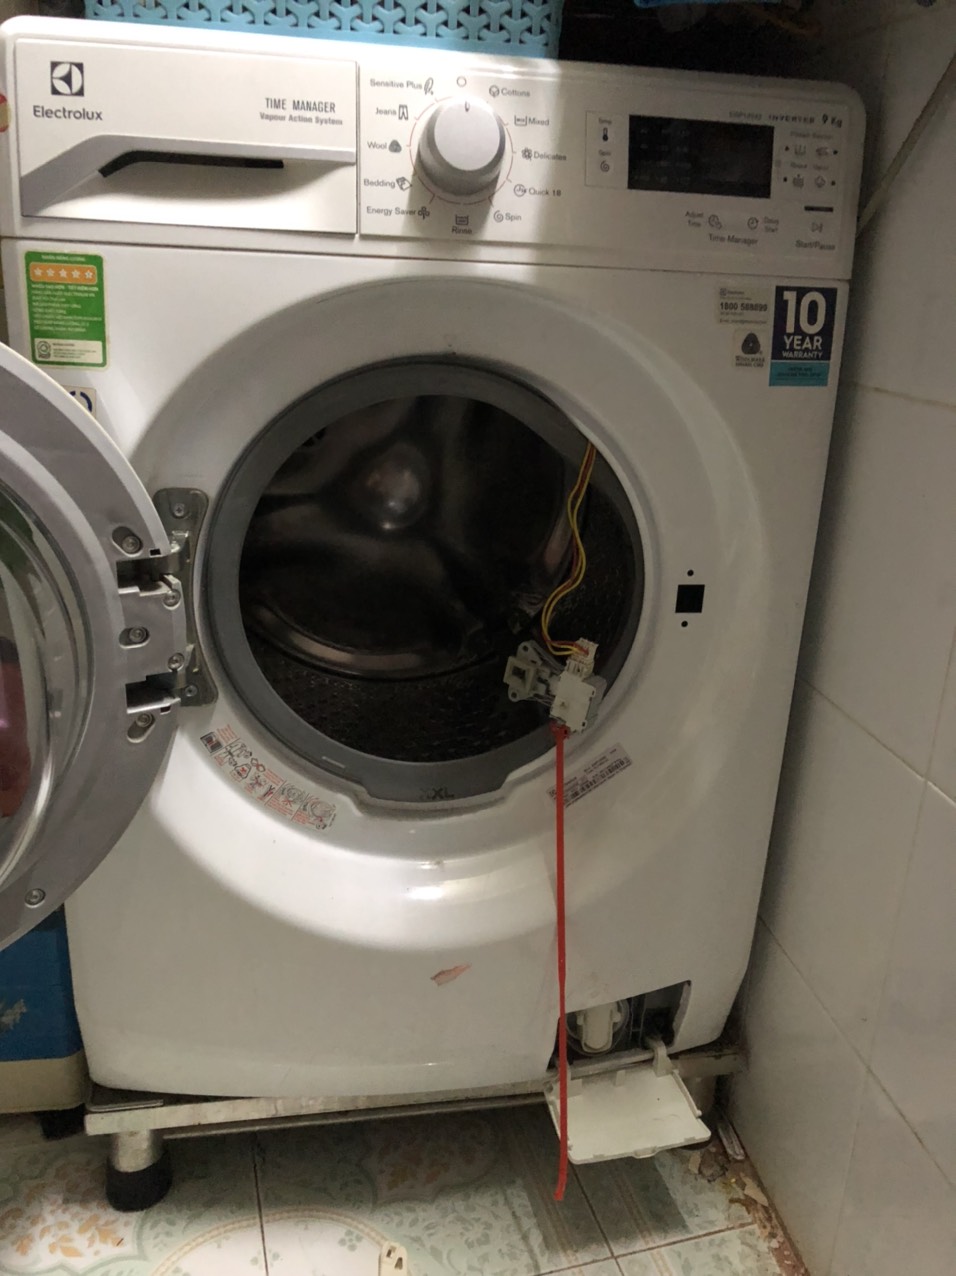 Sửa máy giặt tại nhà Gò Vấp hcm không tự ý báo giá ngoài khung giá quy định trên website hoặc bản giá nội bộ đã được phê duyệt vì vậy quý khách hoàn toàn 